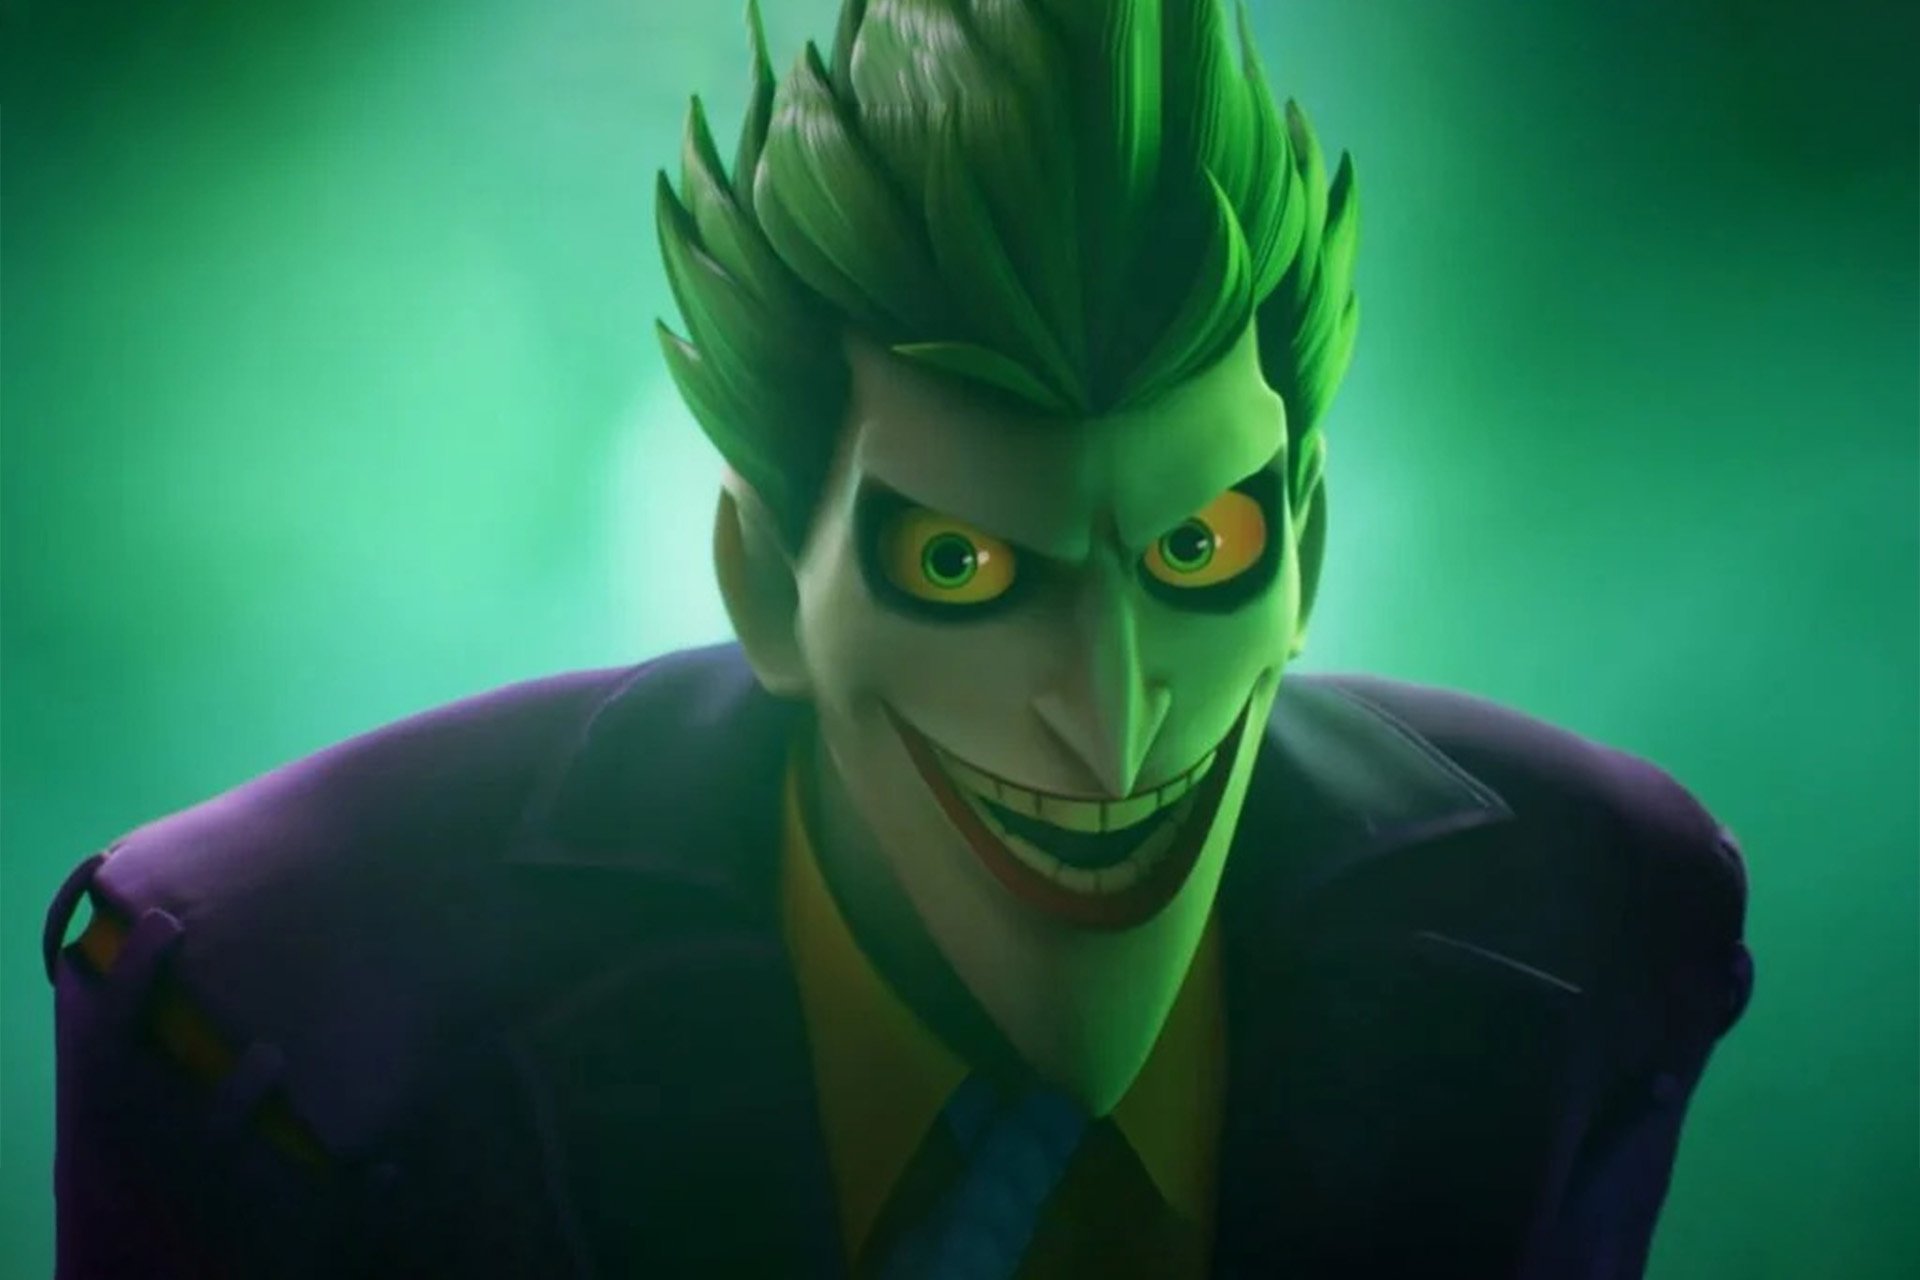 The-Joker